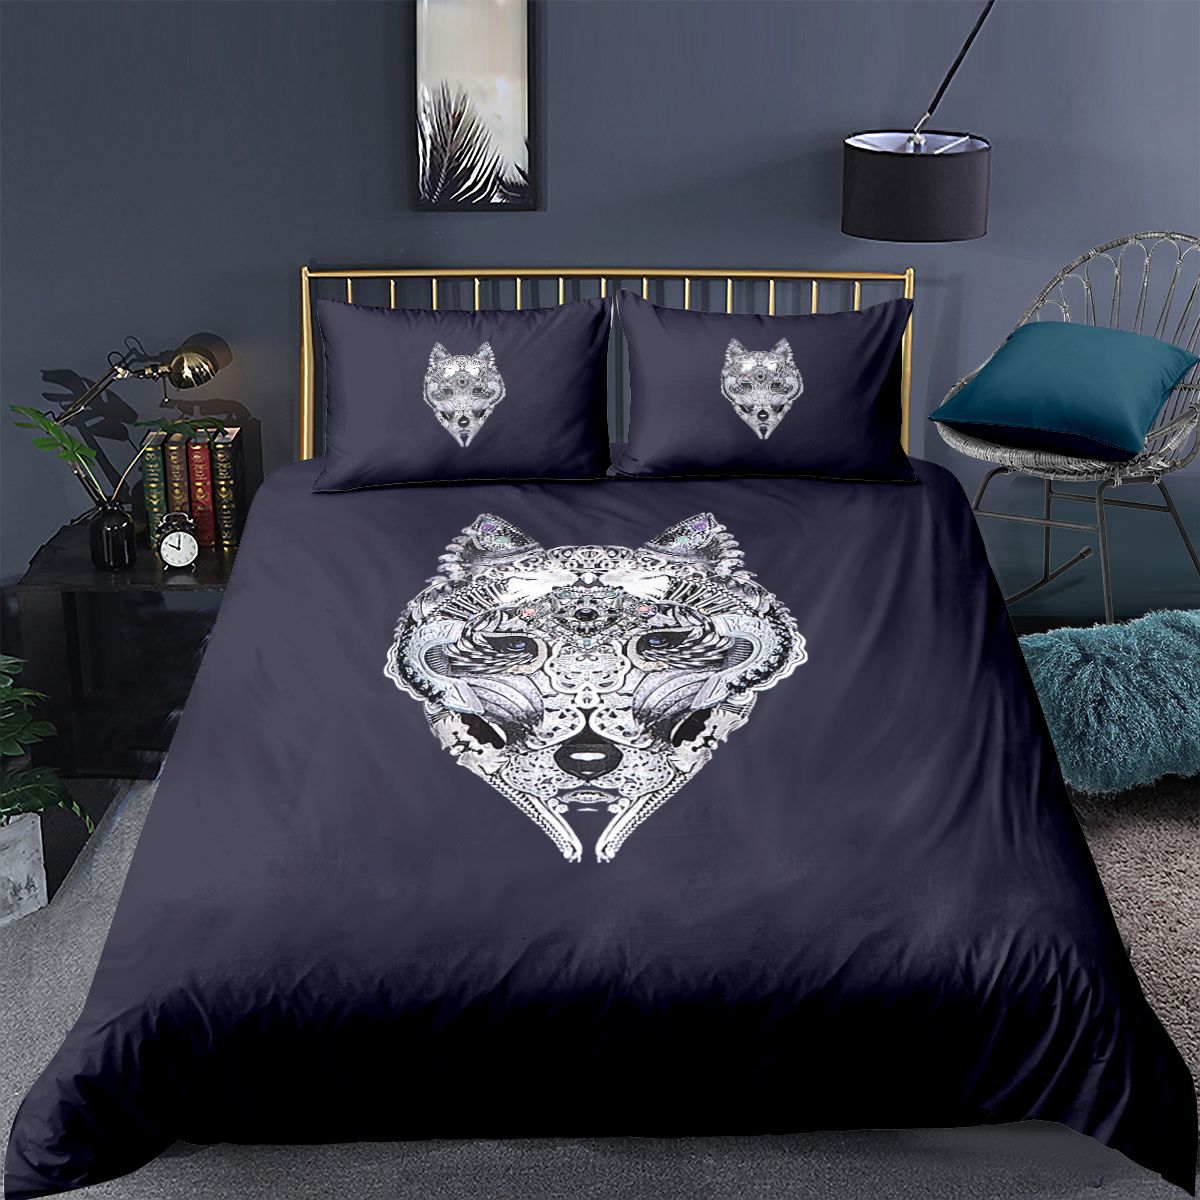 2020 Black Animal Duvet Cover With 2 Pillow Shams 3d Bedding For